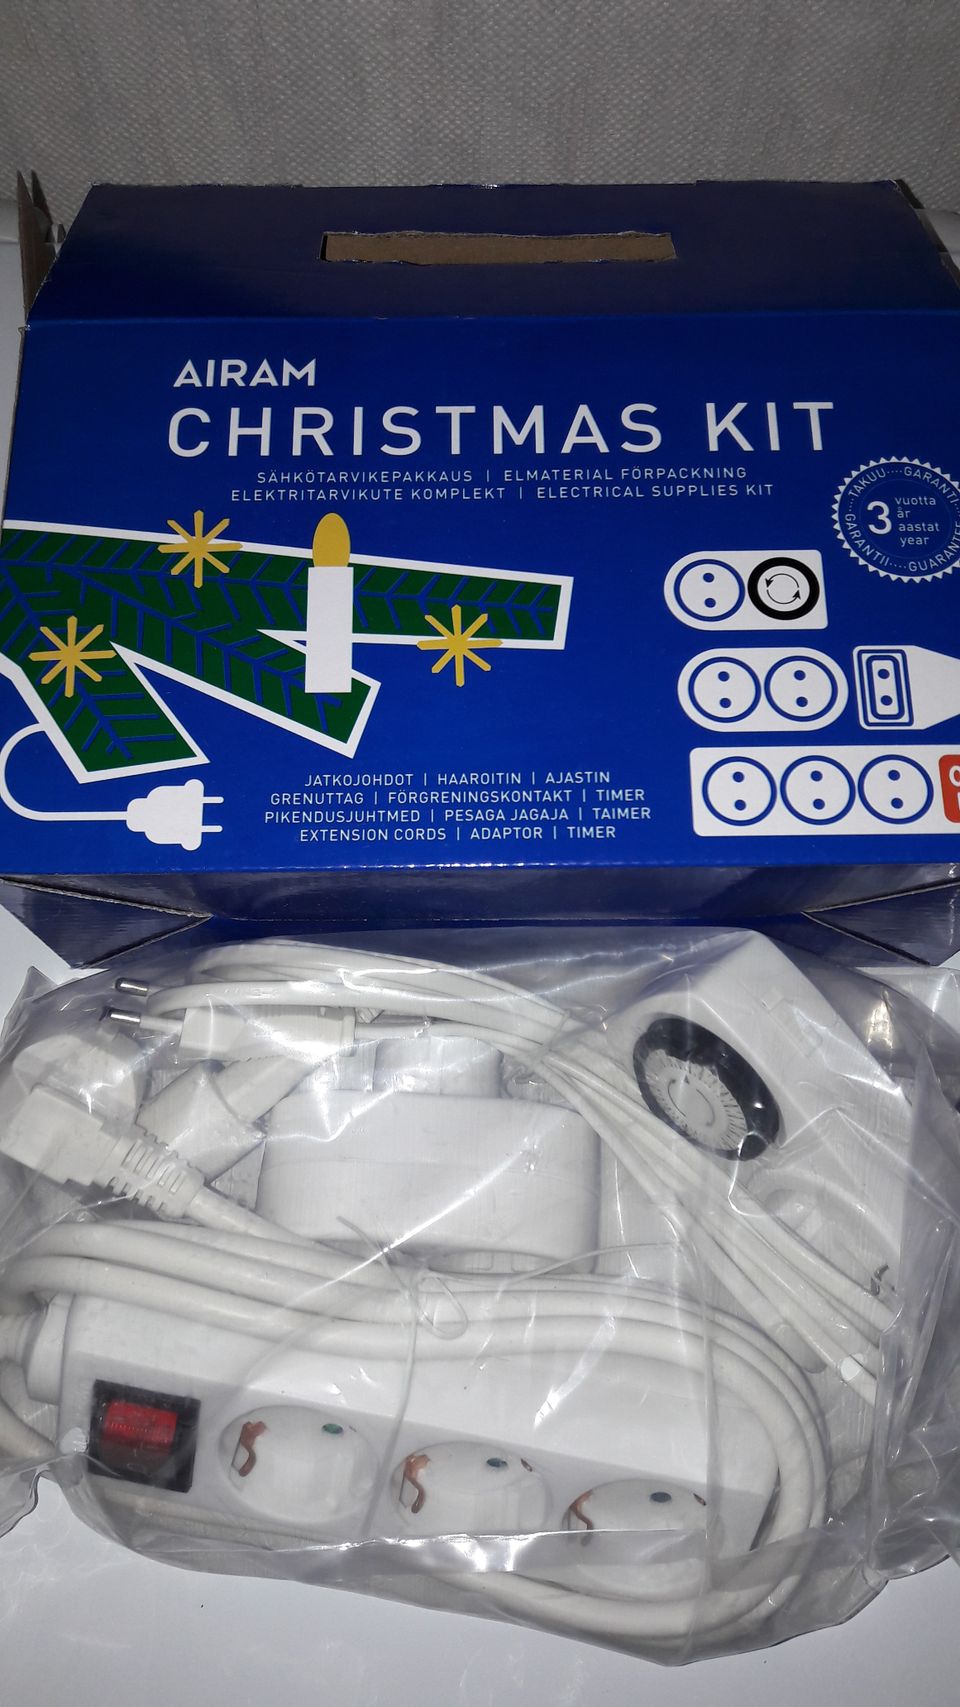 Airam sähkötarvikepakkaus (Christmas Kit)